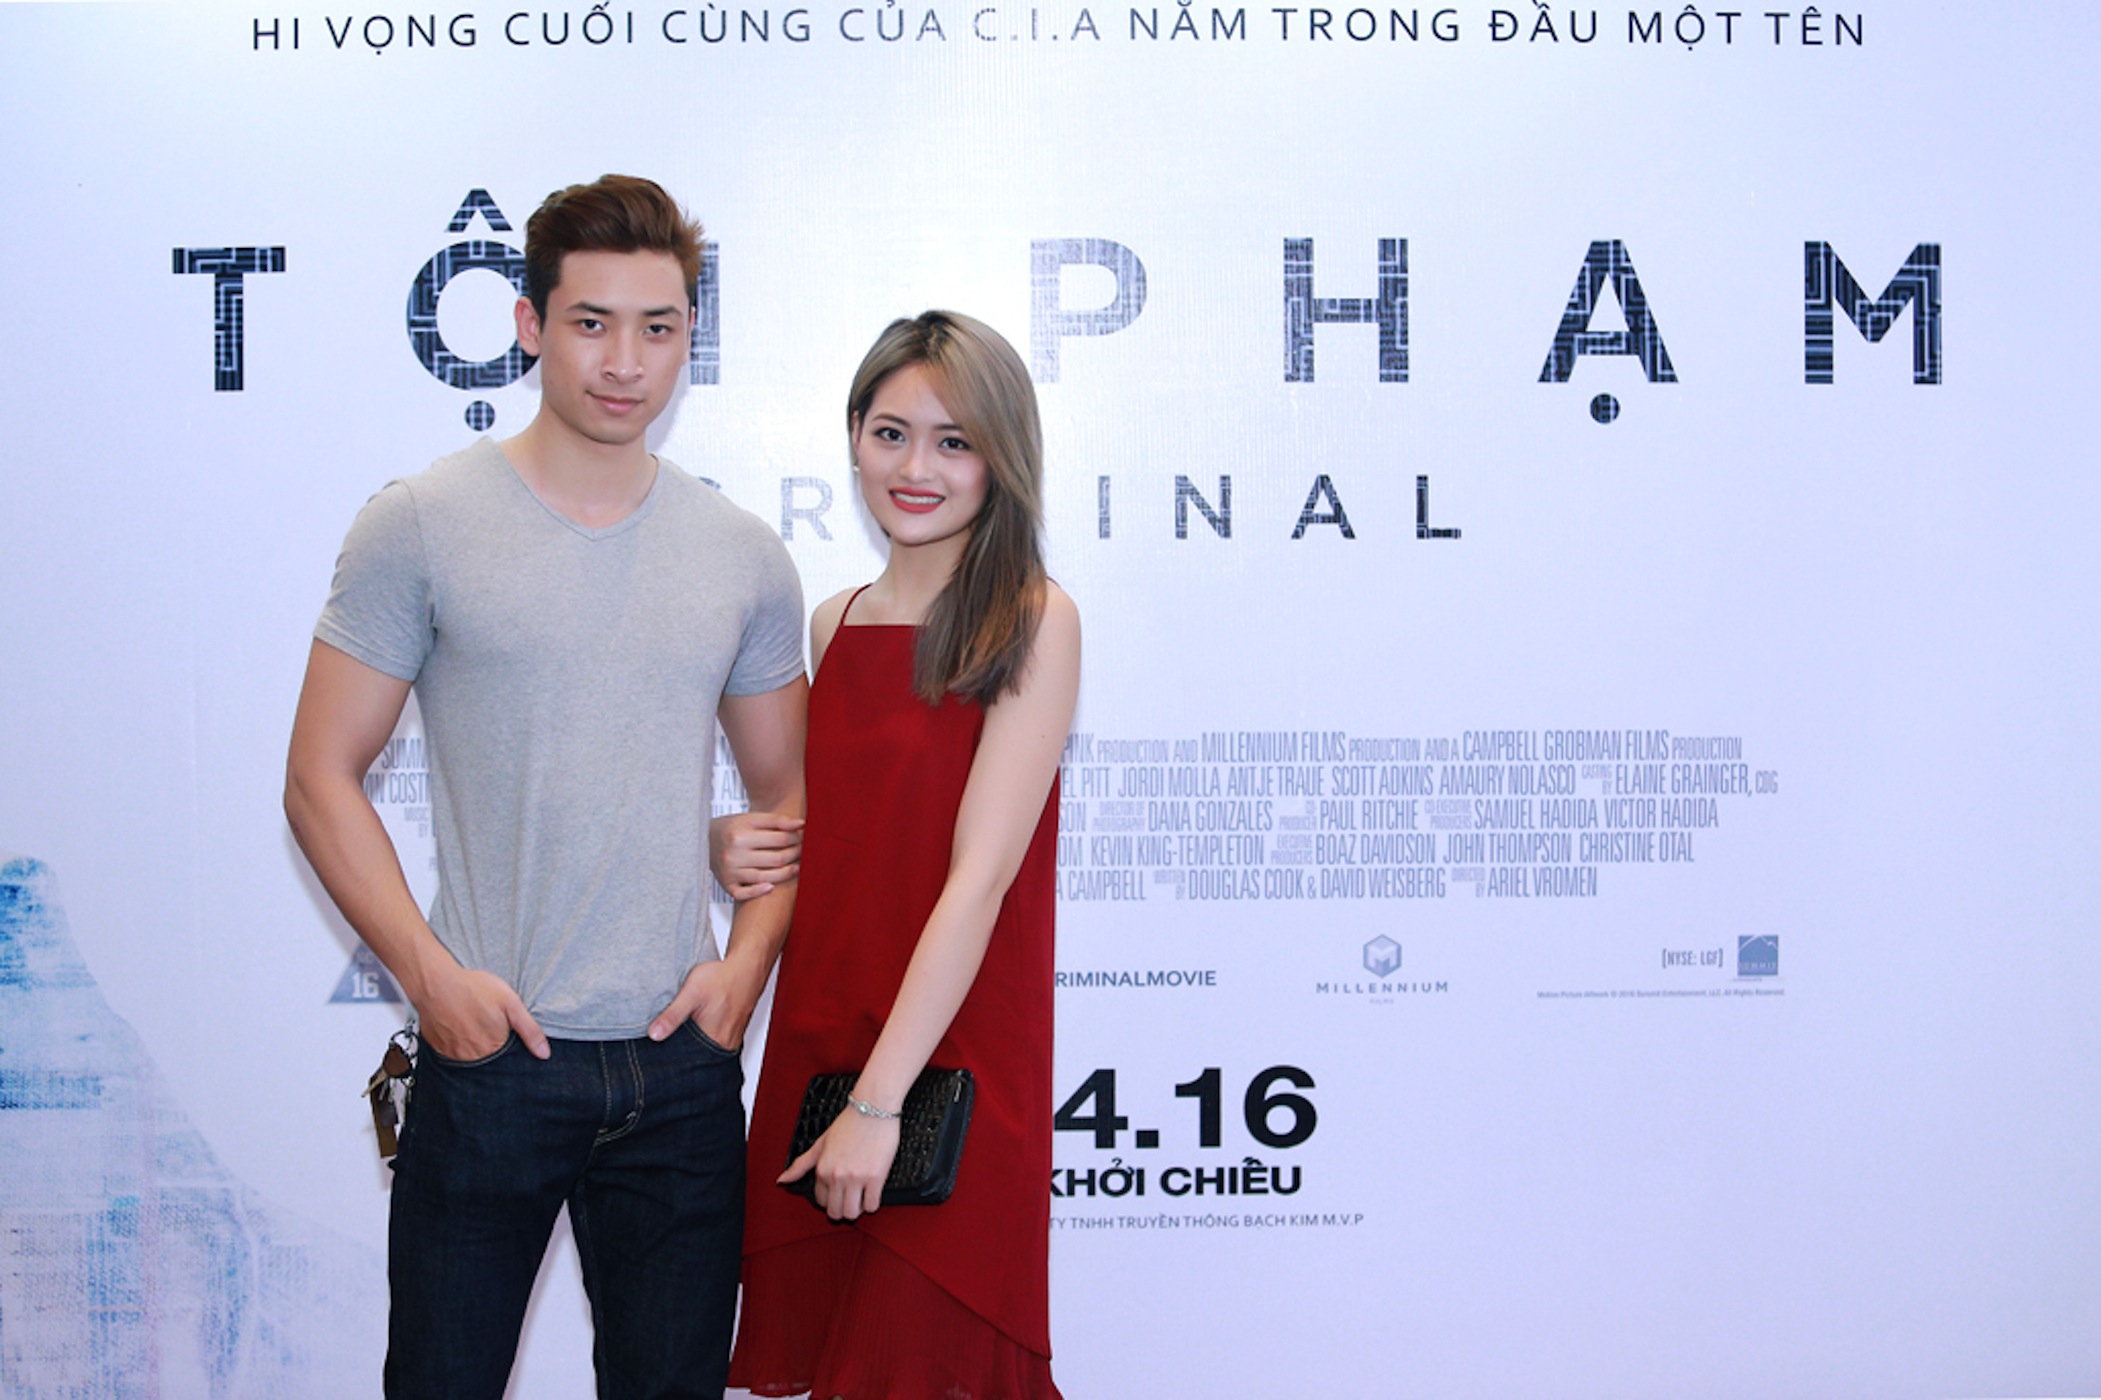 Dàn hot boy, hot girl tung tăng dự công chiếu Criminal tại Platinum Cineplex